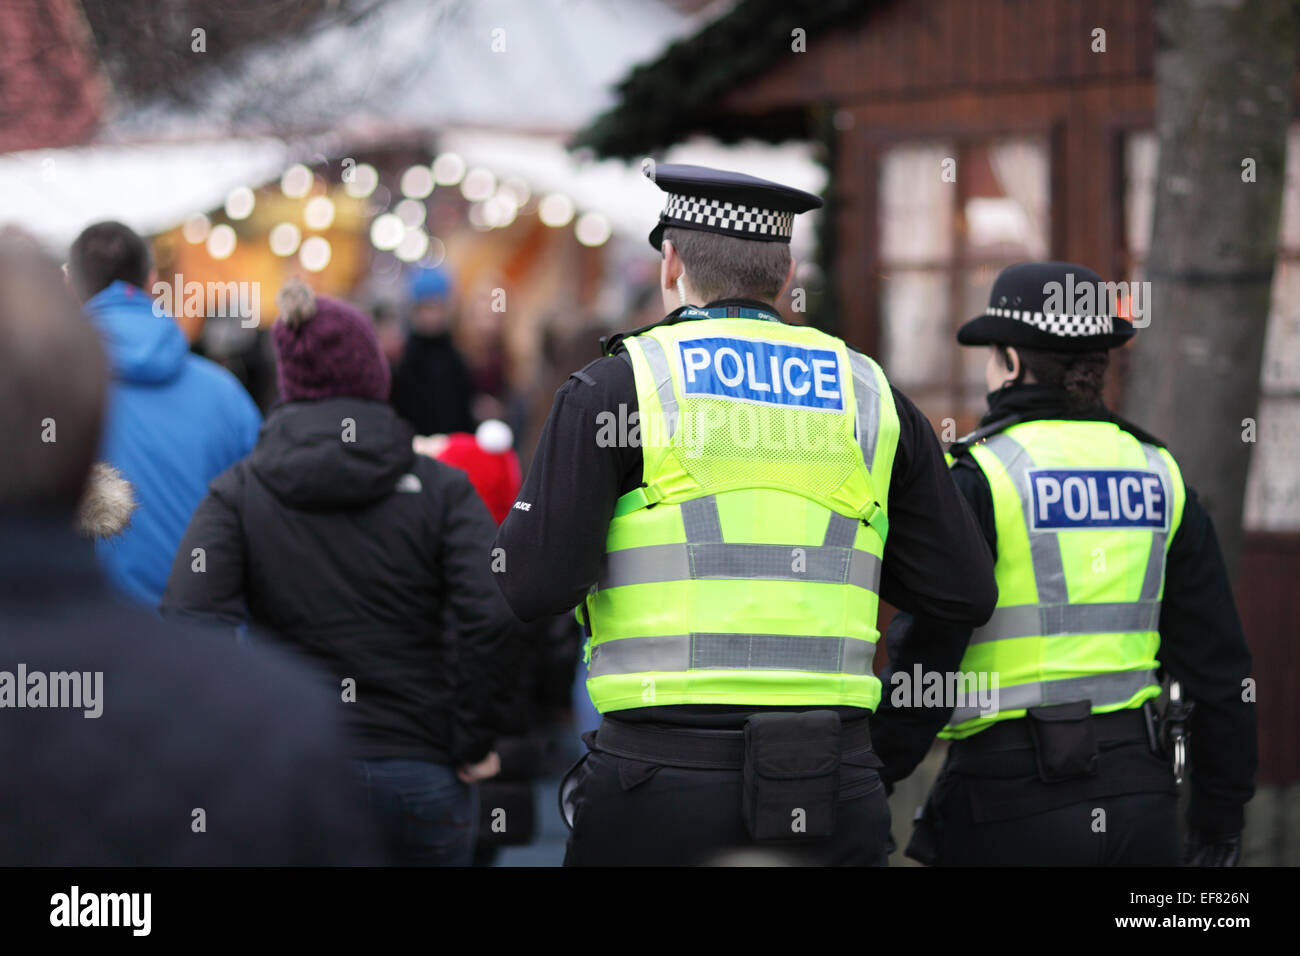 La polizia di alta visibilità giacche policing crowd control a un evento NEL REGNO UNITO Foto Stock